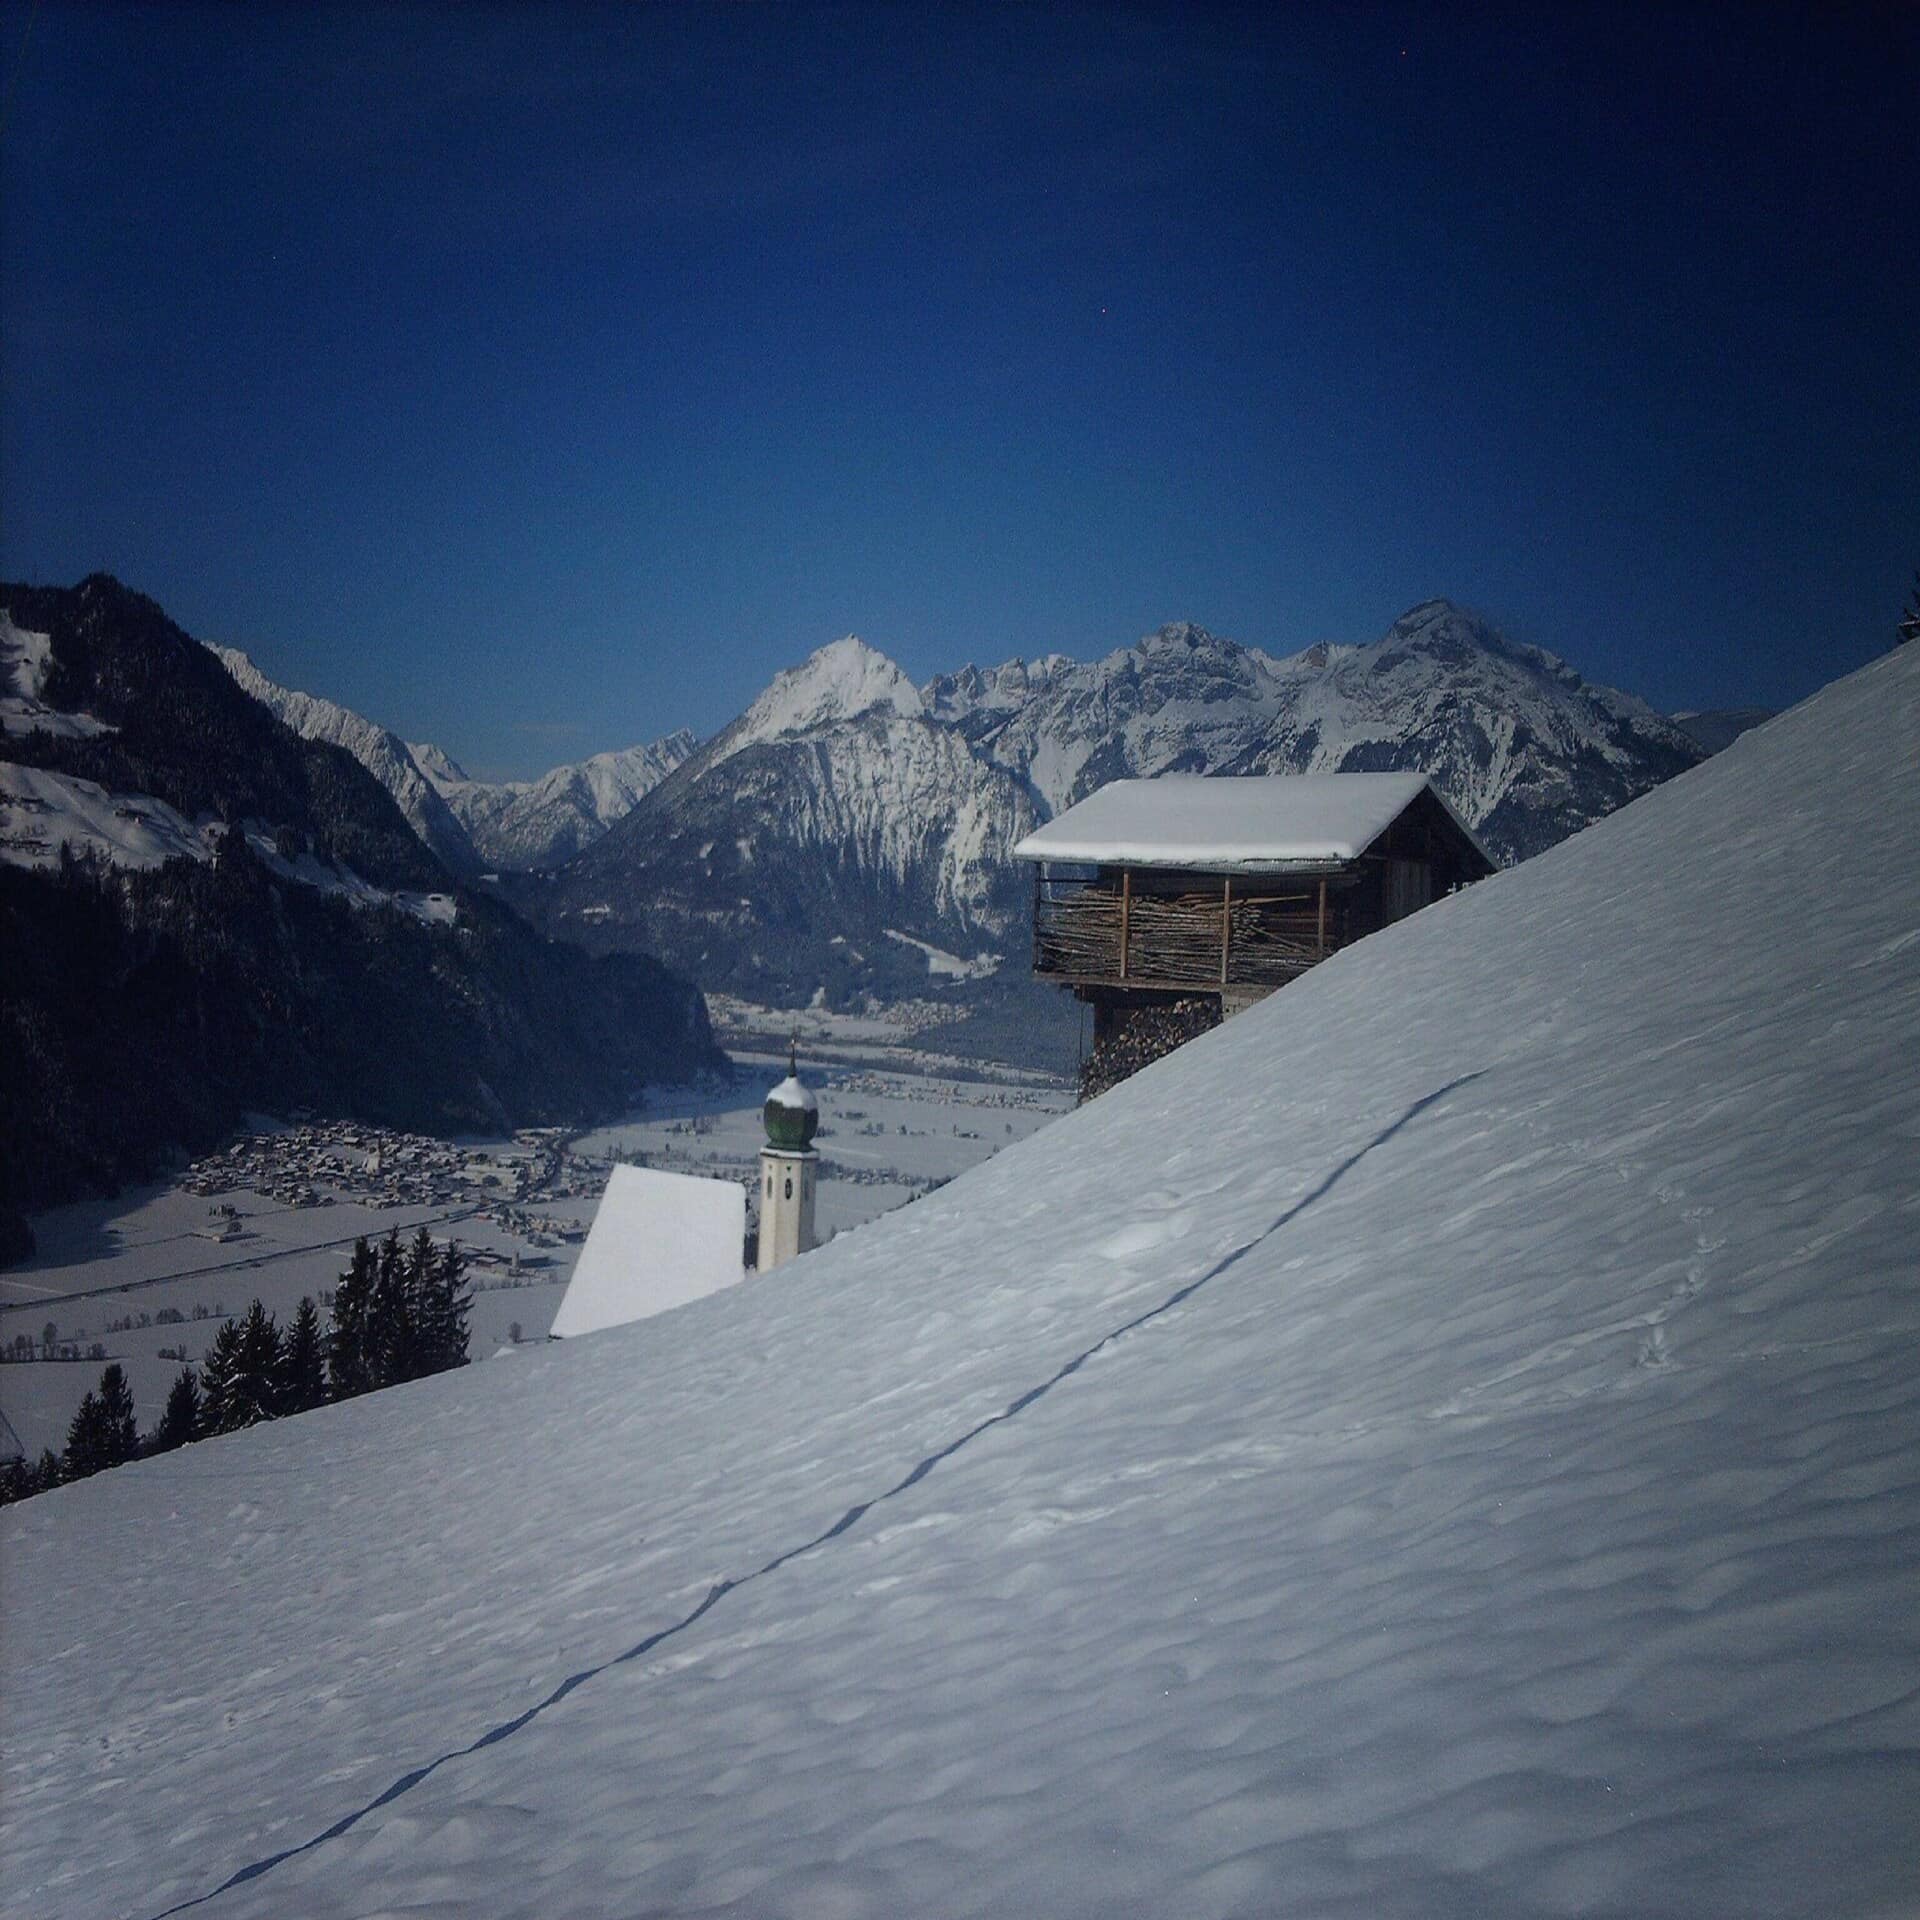 Blick von einem Berg auf eine kleine Hütte und das Zillertal. Es ist Winter und überall liegt Schnee.